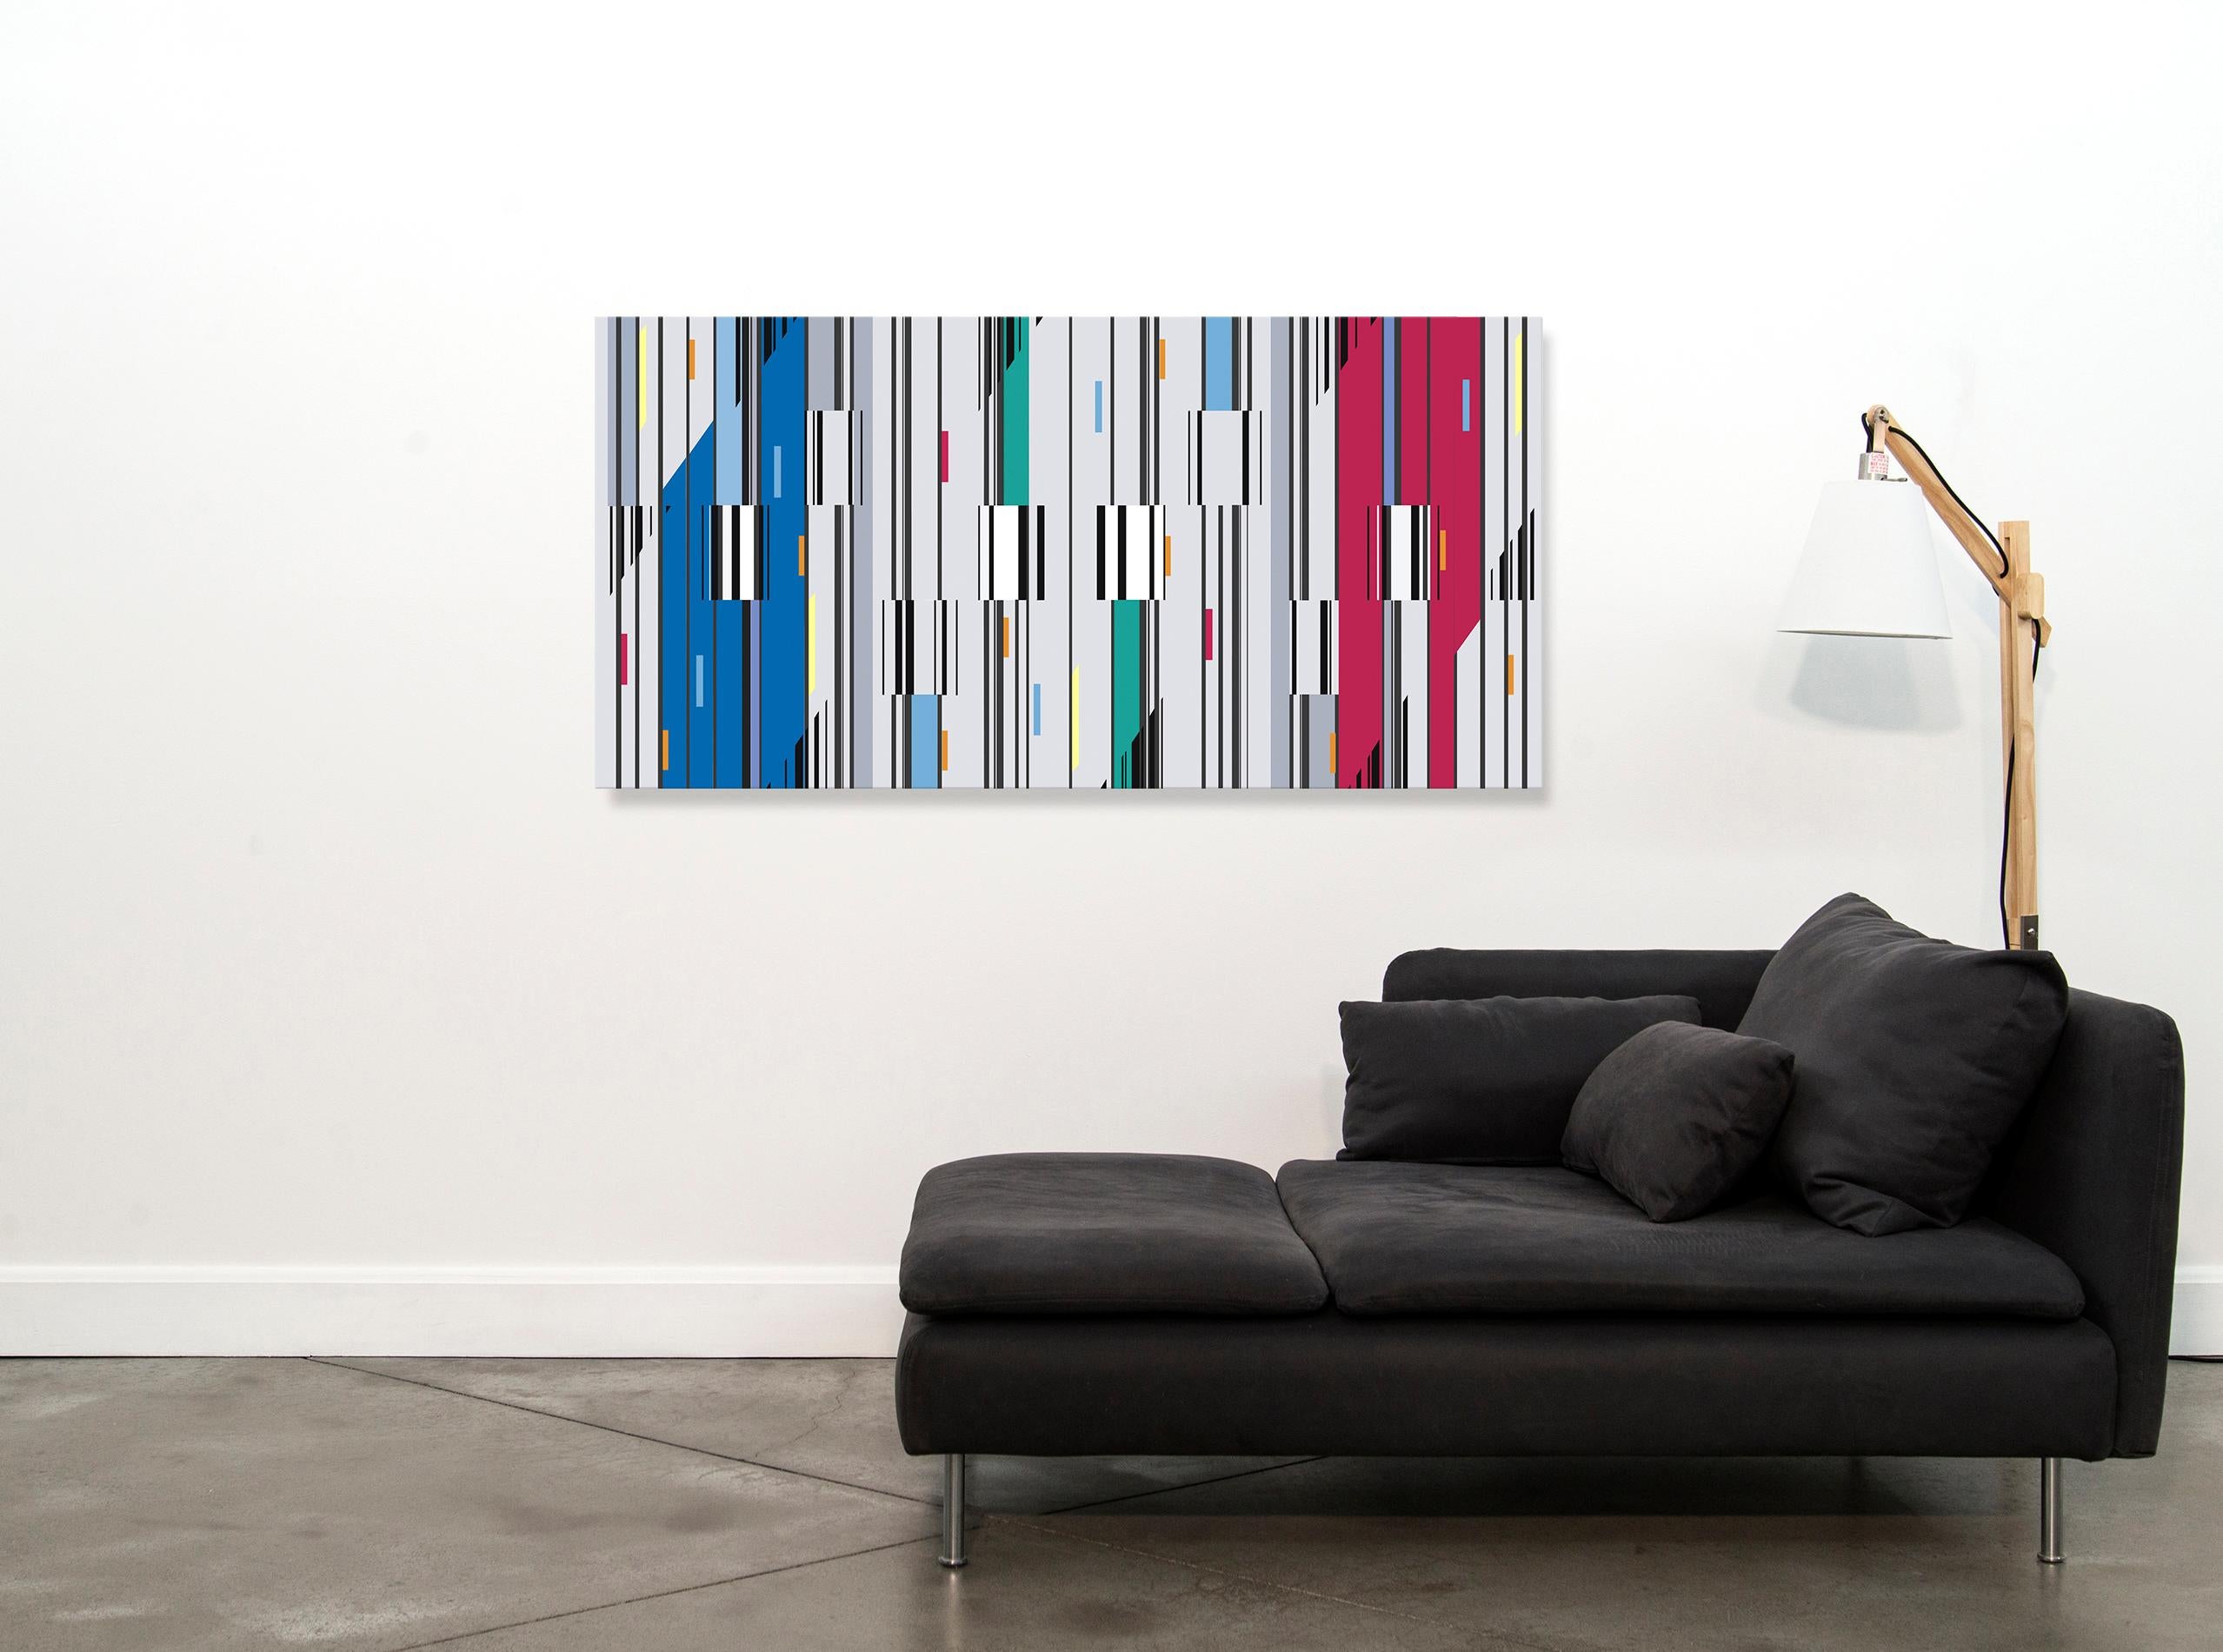 Les peintures modernes et graphiques de Kramer expriment une abstraction géométrique lyrique par un jeu harmonique de formes syncopées de tailles et de couleurs différentes. Ce travail comprend des palettes primaires et secondaires de rouge, bleu et